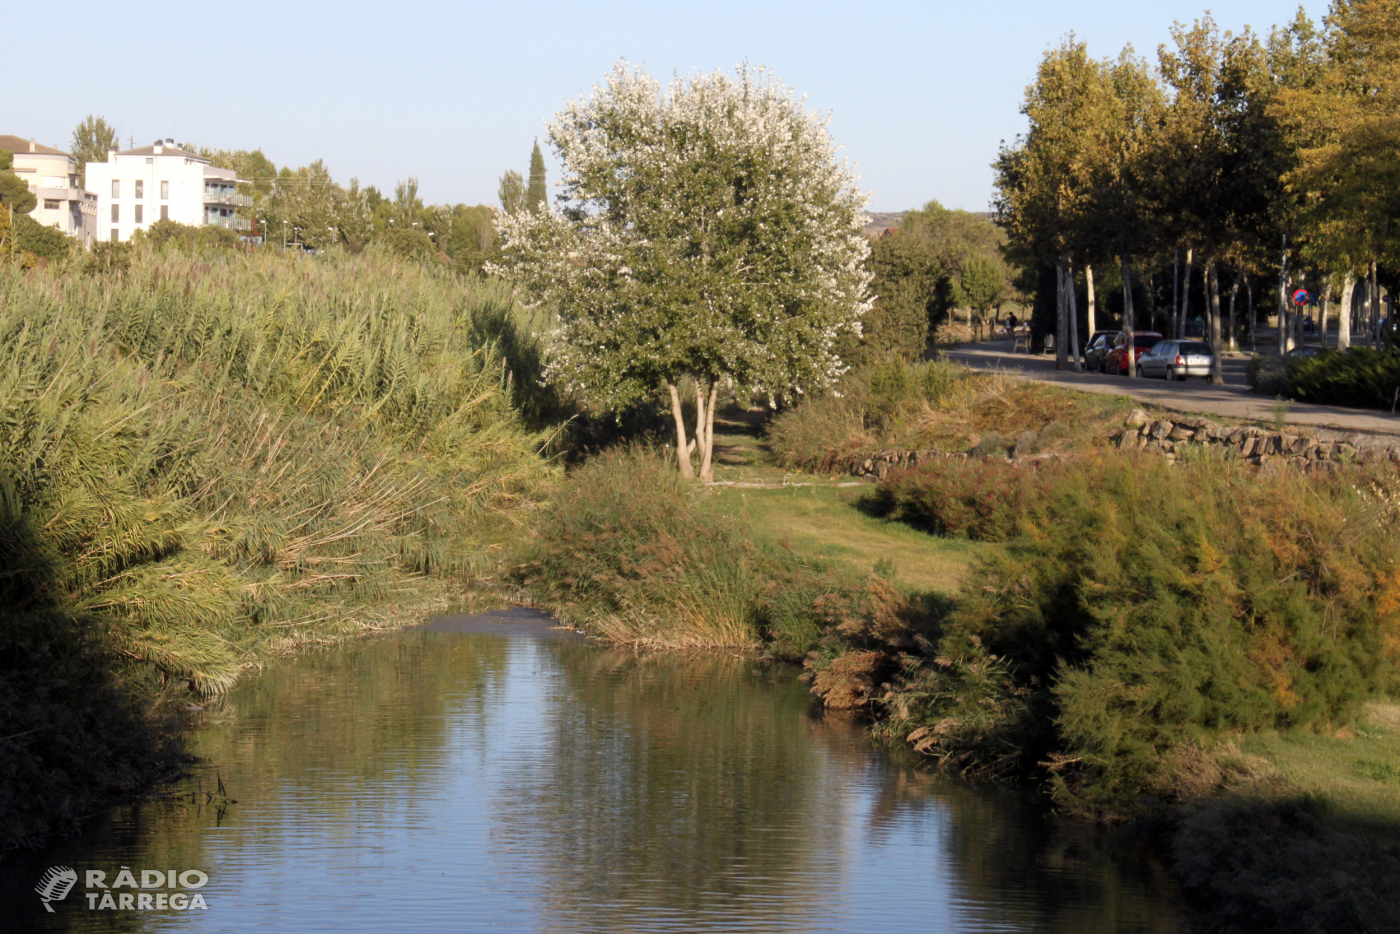 L’Ajuntament de Tàrrega aprova un nou projecte de recuperació dels espais verds situats a la llera del riu Ondara